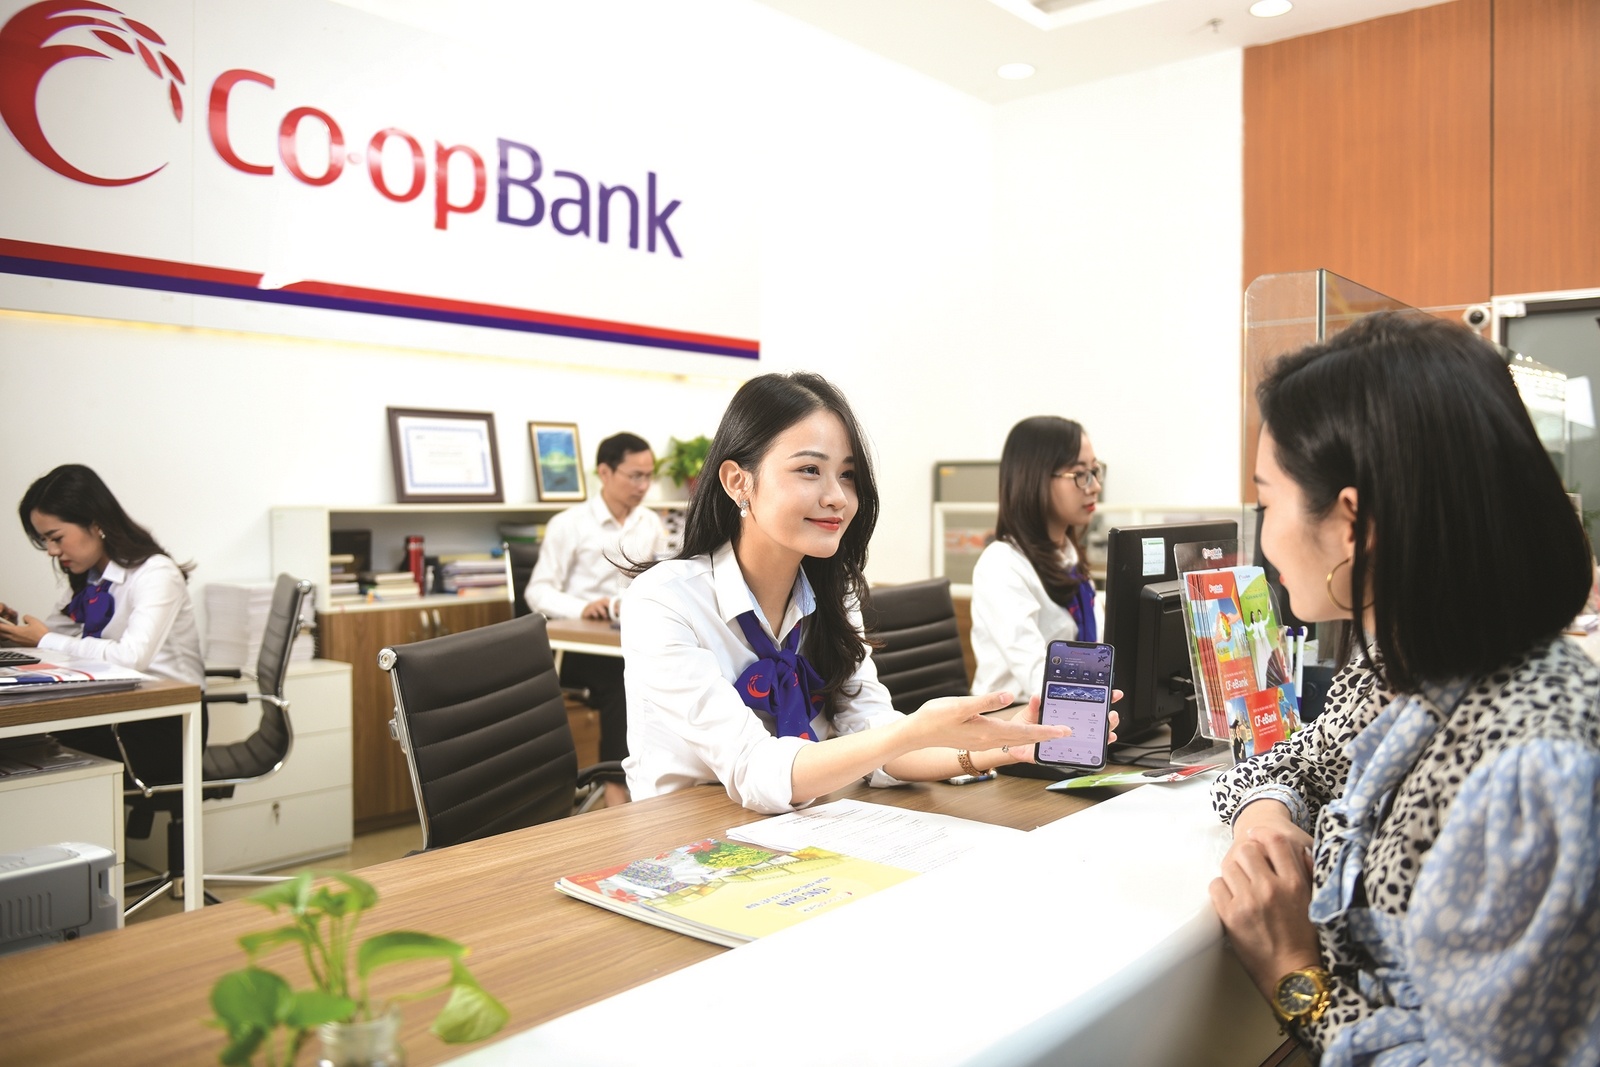 Ứng dụng ngân hàng số Co-opBank Mobile Banking ra đời đã đánh dấu bước đột phá to lớn trong quá trình chuyển đổi số toàn diện và hỗ trợ hệ thống QTDND phát triển bền vững, tăng cường “kết nối nông thôn - thành thị”